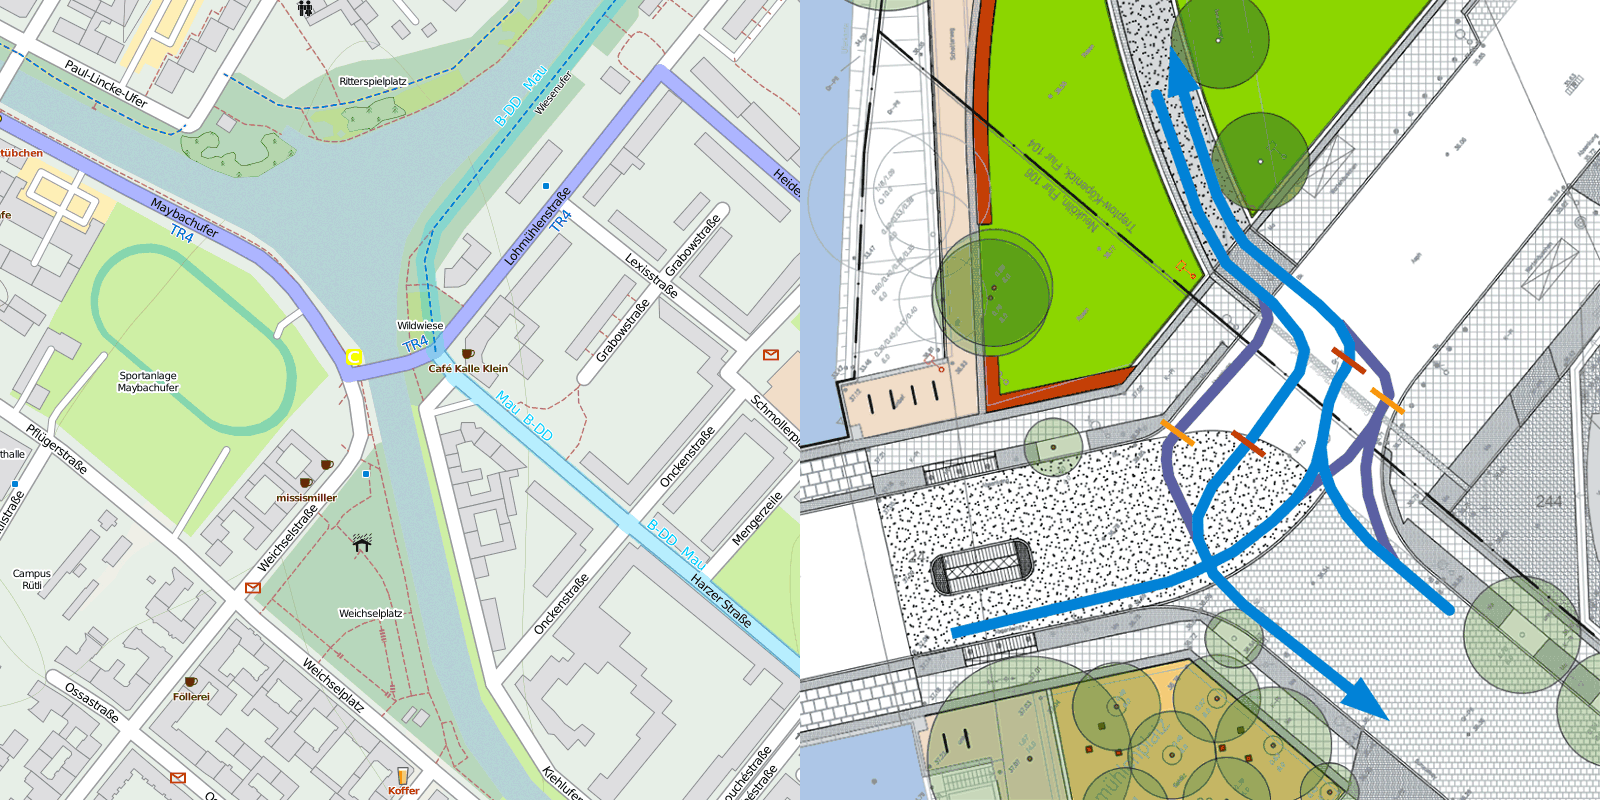 Skizzen: Fahrradkarte Openstreetmap mit Verlauf Mauerradweg und Tangentialroute 4 und Fahrweg der dem Mauerradweg folgenden Radfahrer in beiden Richtungen in den aktuellen Plan der kreuzung Lohmühlenplatz eingezeichnet.